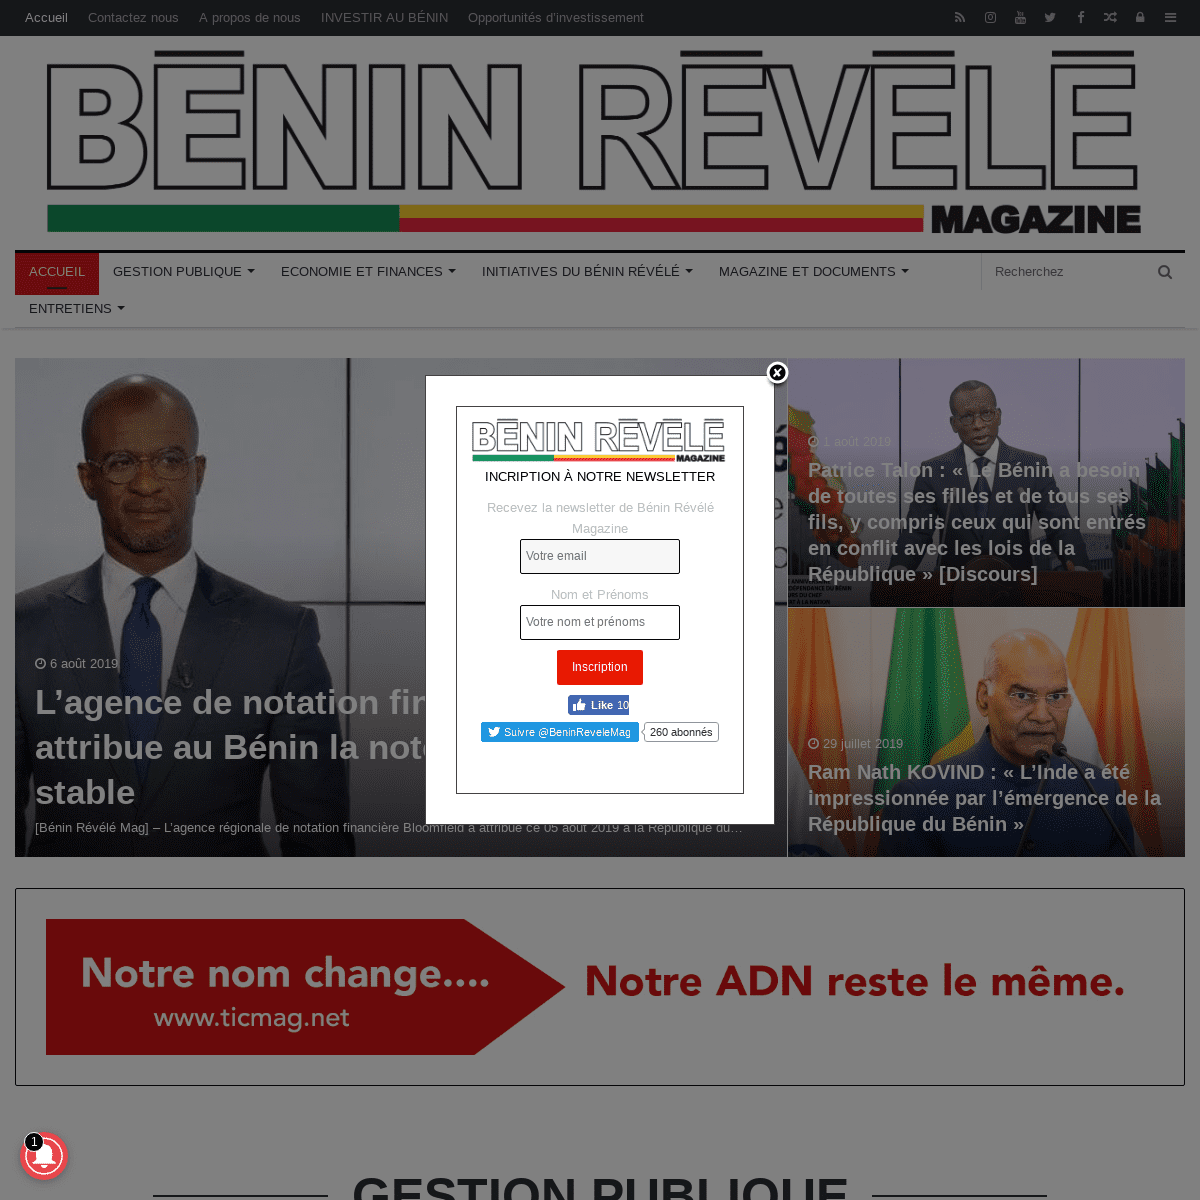 Bénin Révélé Magazine - Portail web de l'économie et de l'investissement